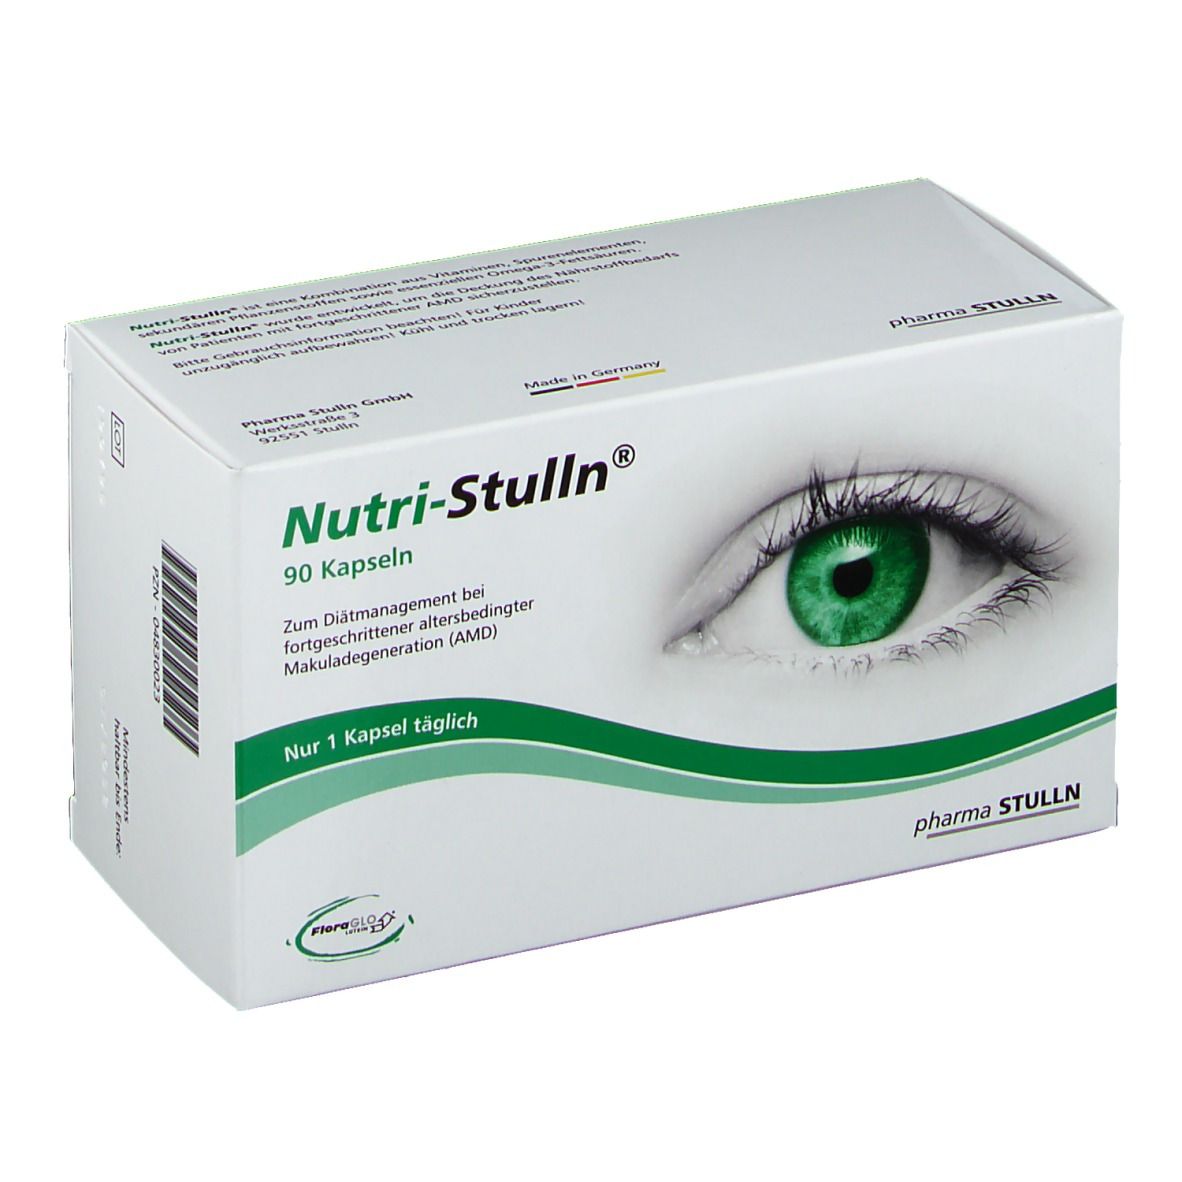 Nutri-Stulln® capsules